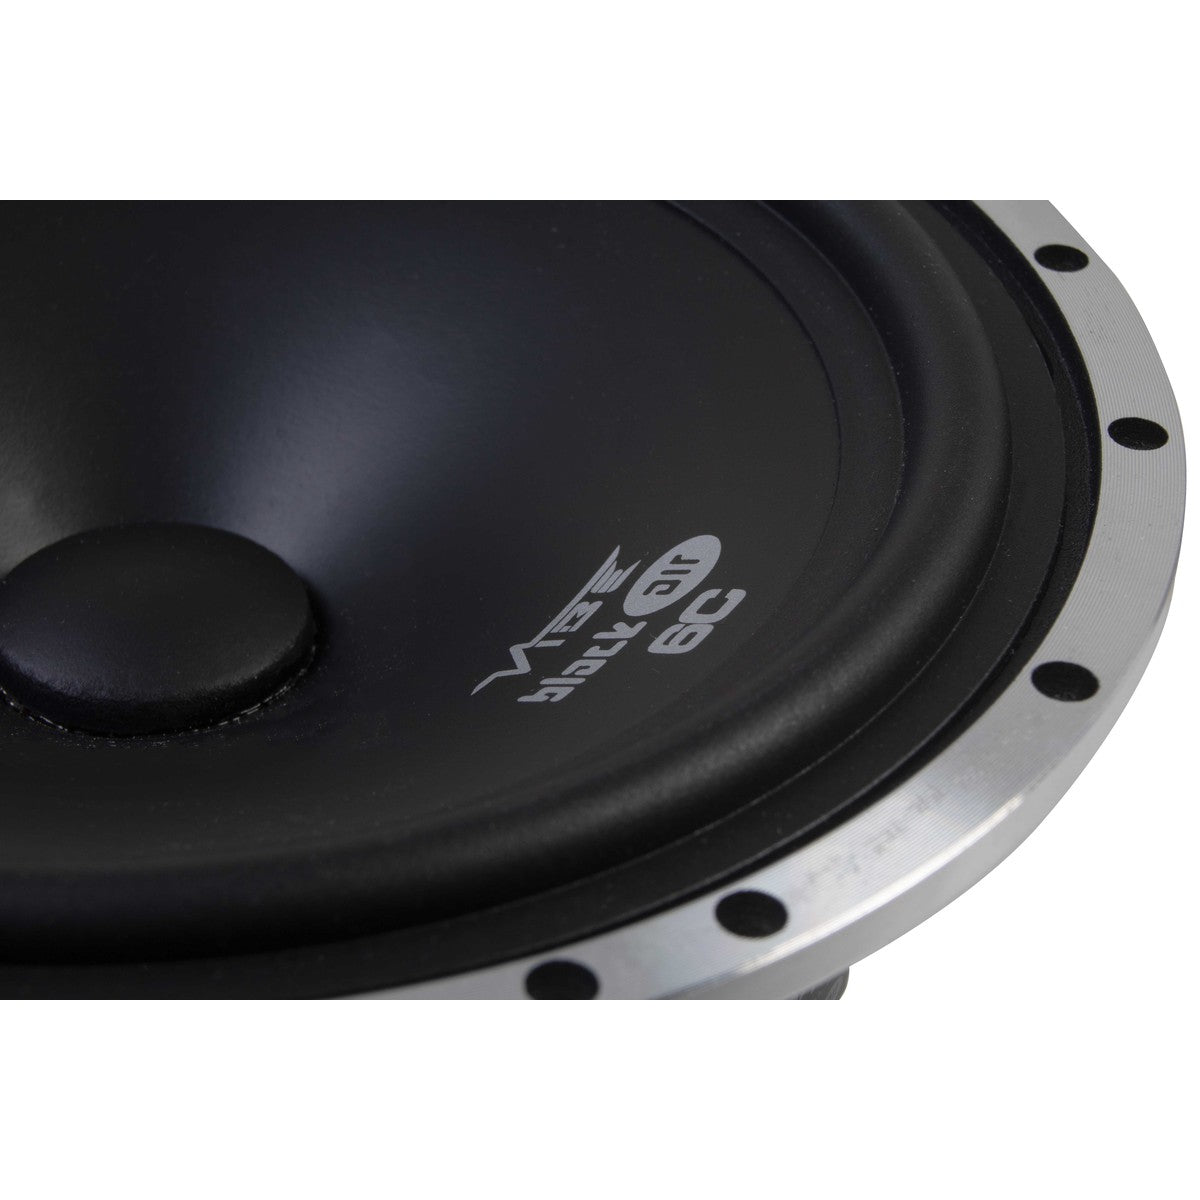 Vibe Audio-Blackair 6C-V0-6.5" (16,5cm) Lautsprecherset-Masori.de